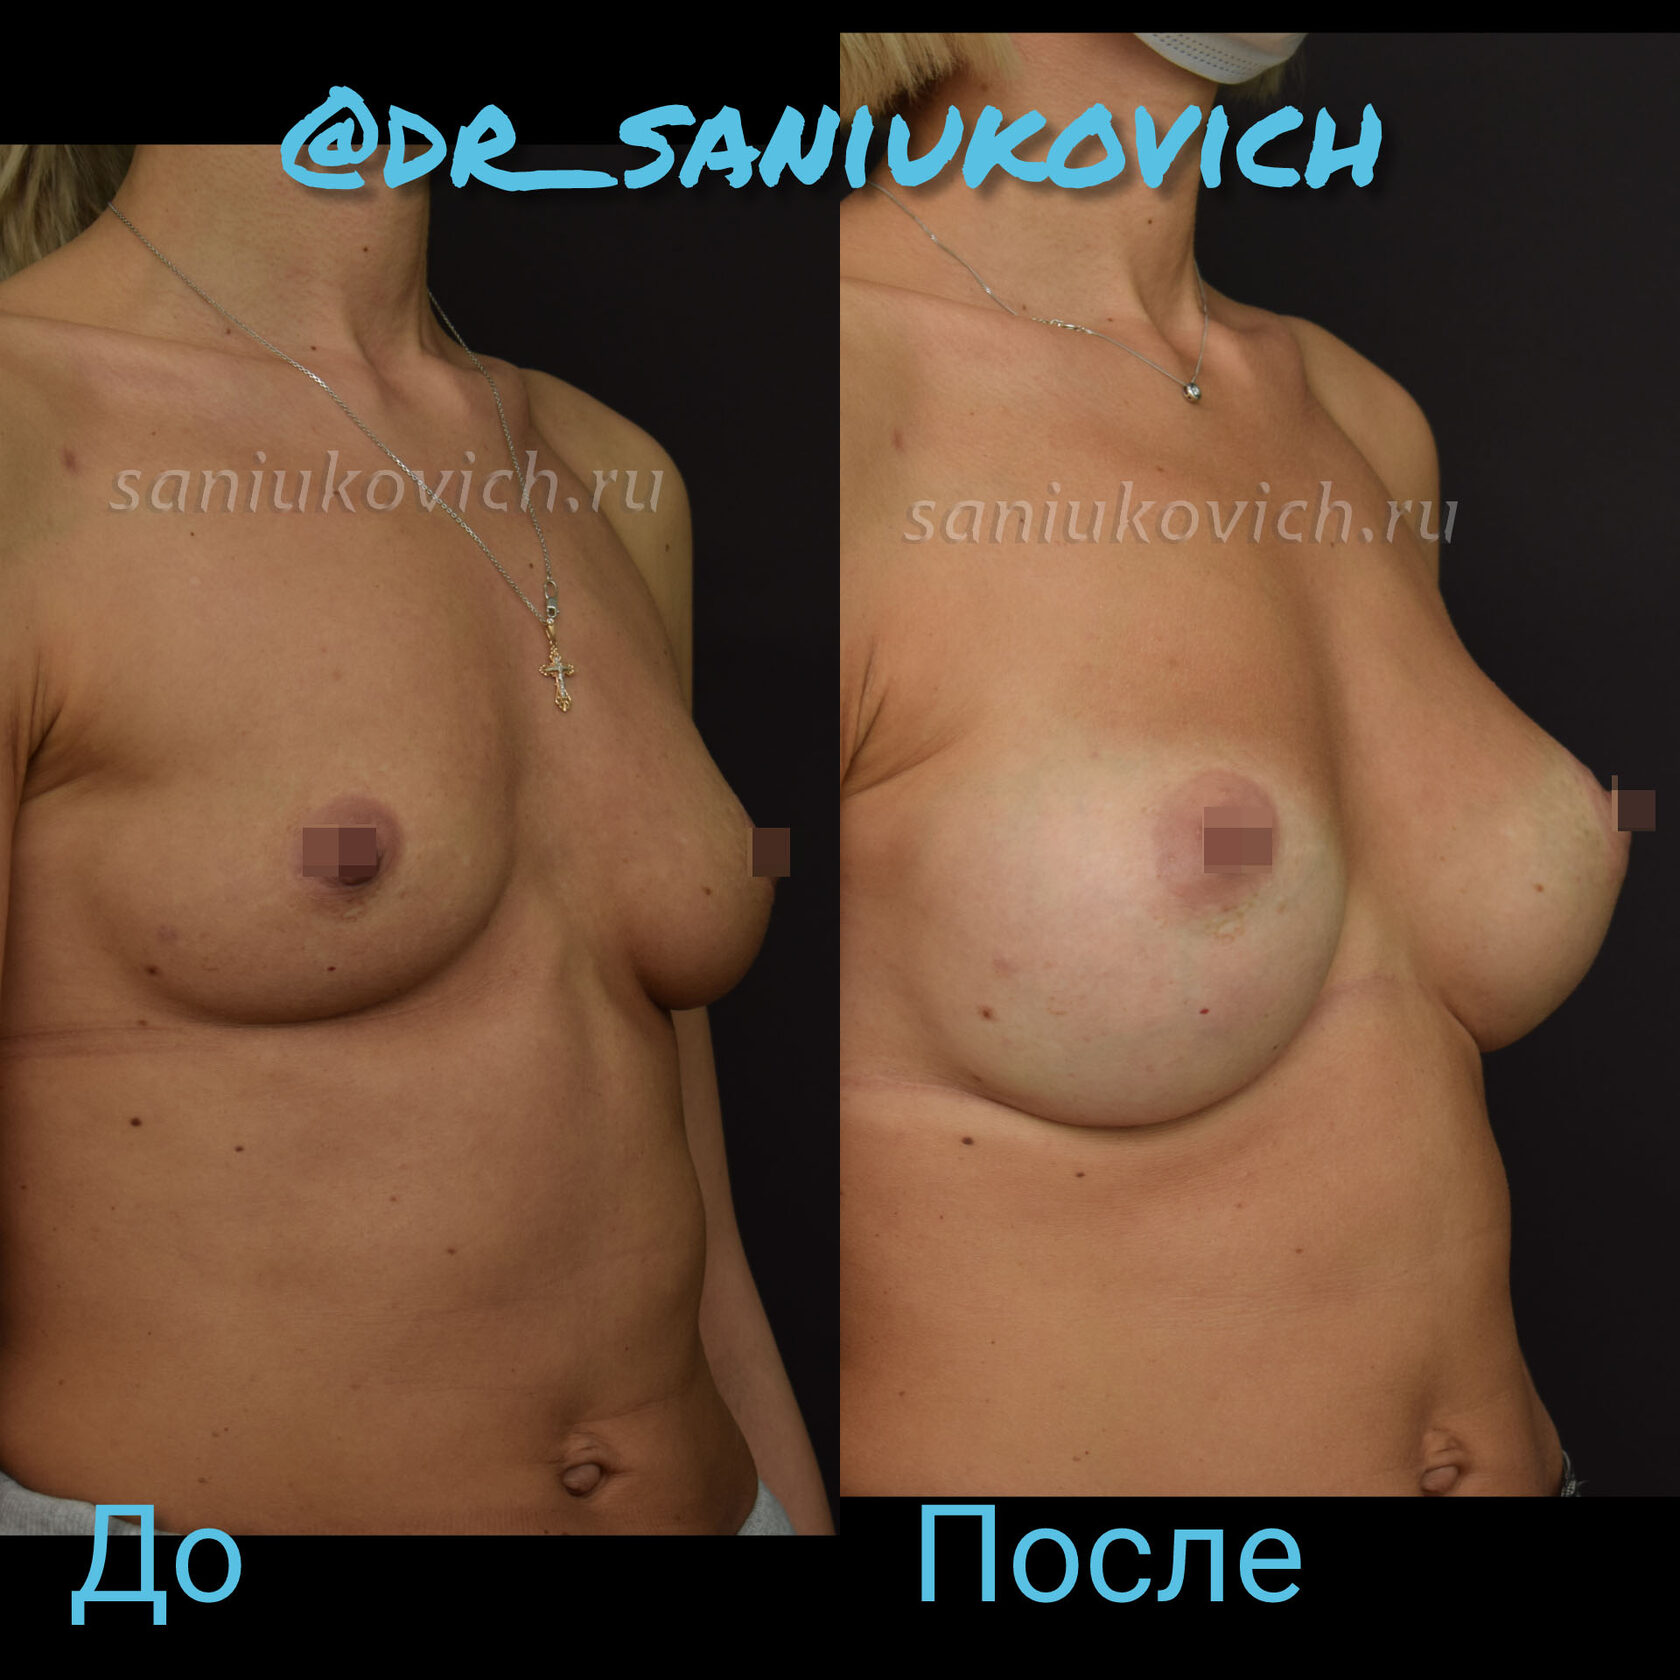 подтяжка груди с гантелями для женщин фото 26